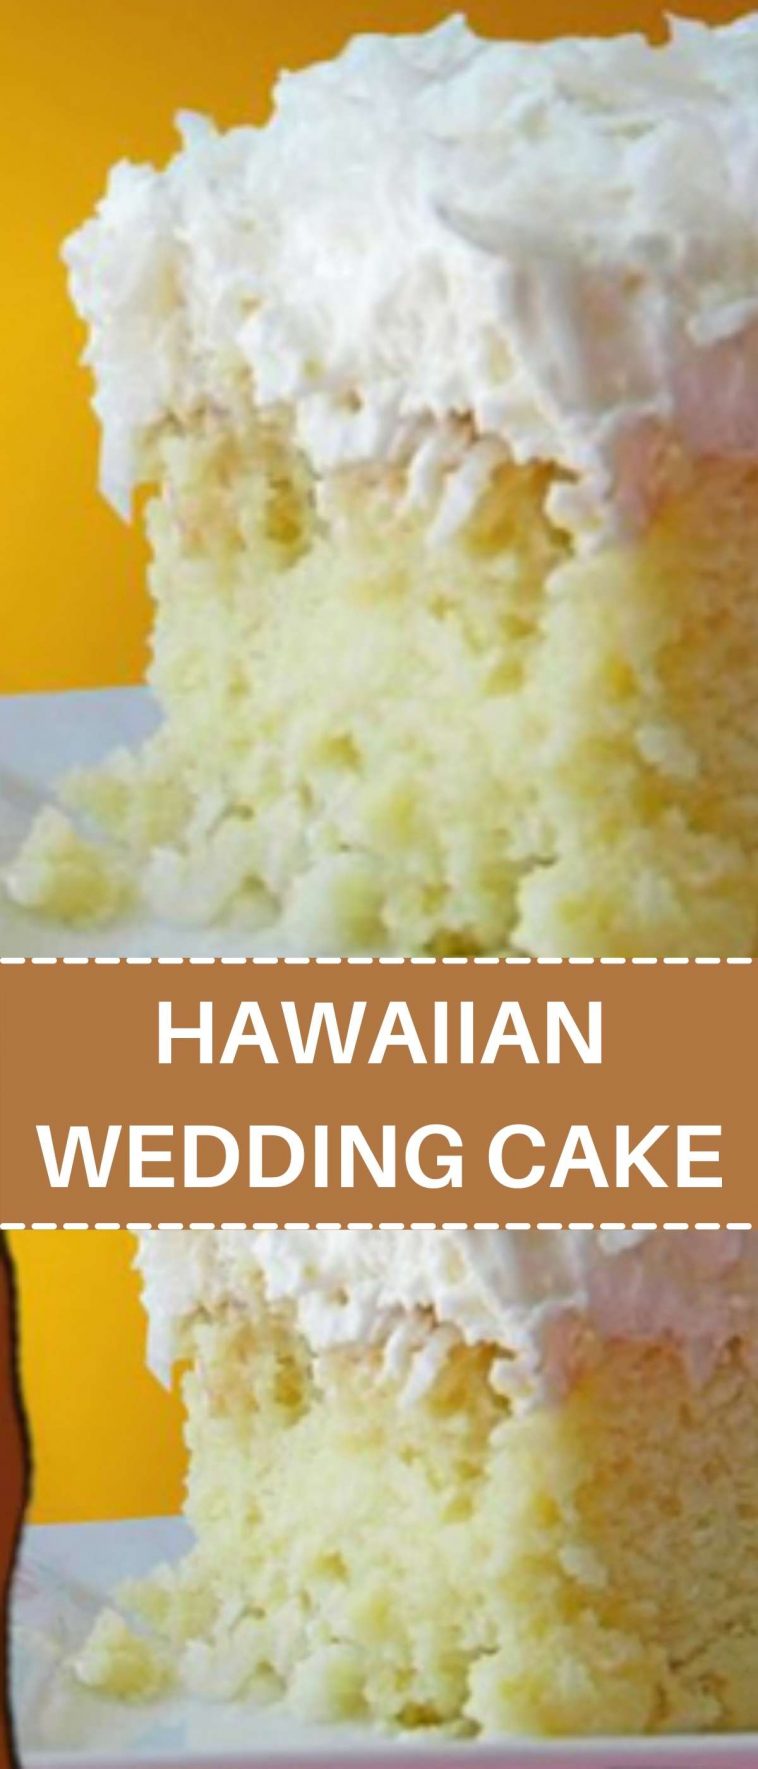 HAWAIIAN WEDDING CAKE